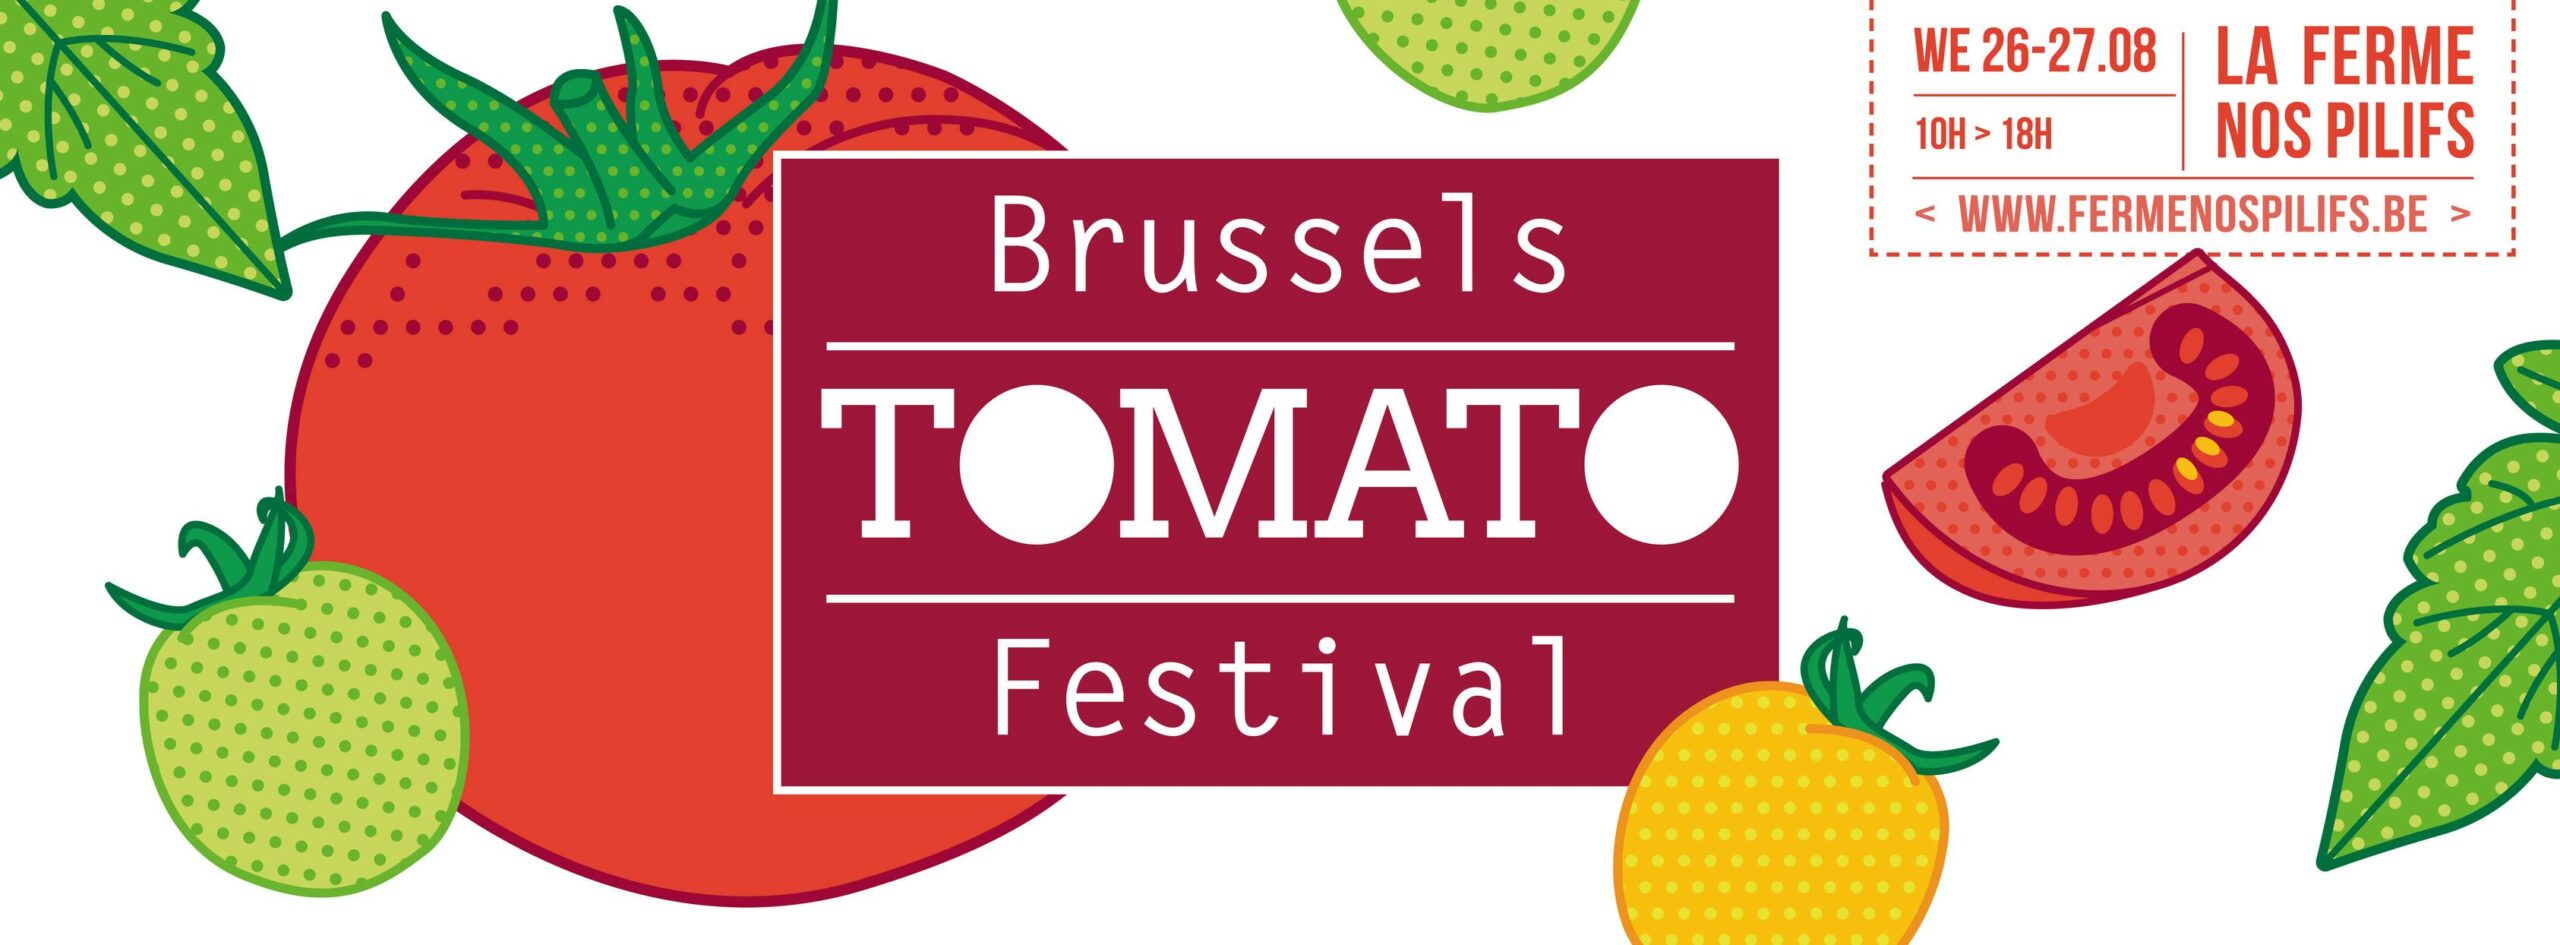 Les 26 et 27/08, Brussels Tomato Festival aux Pilifs